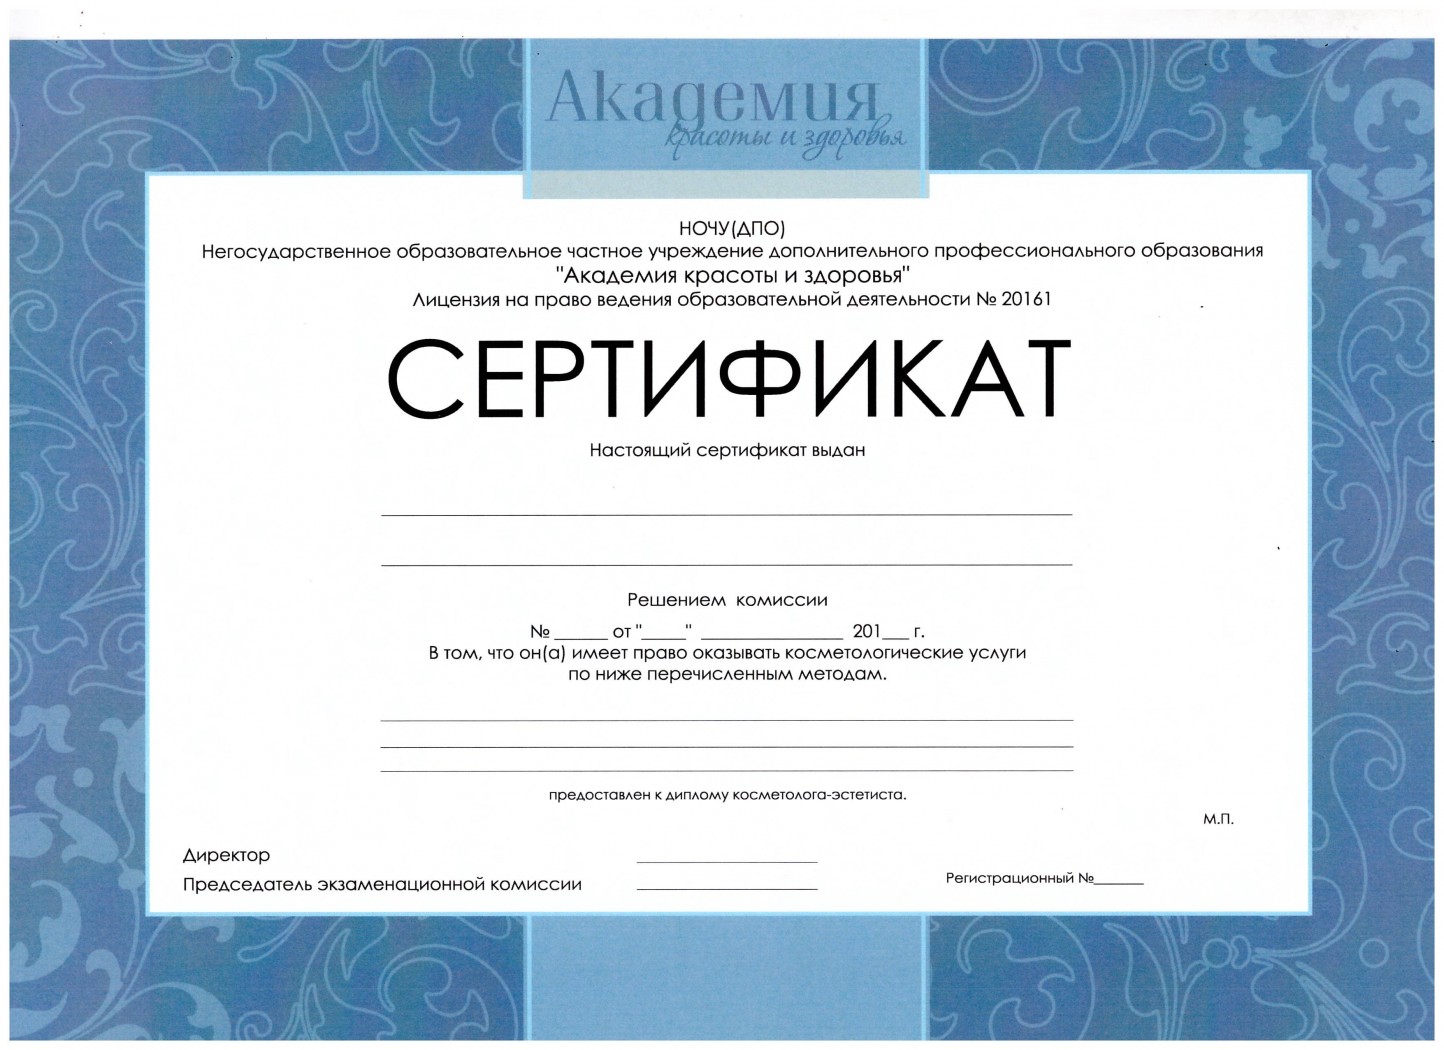 Сертификат о прохождении курса массажа